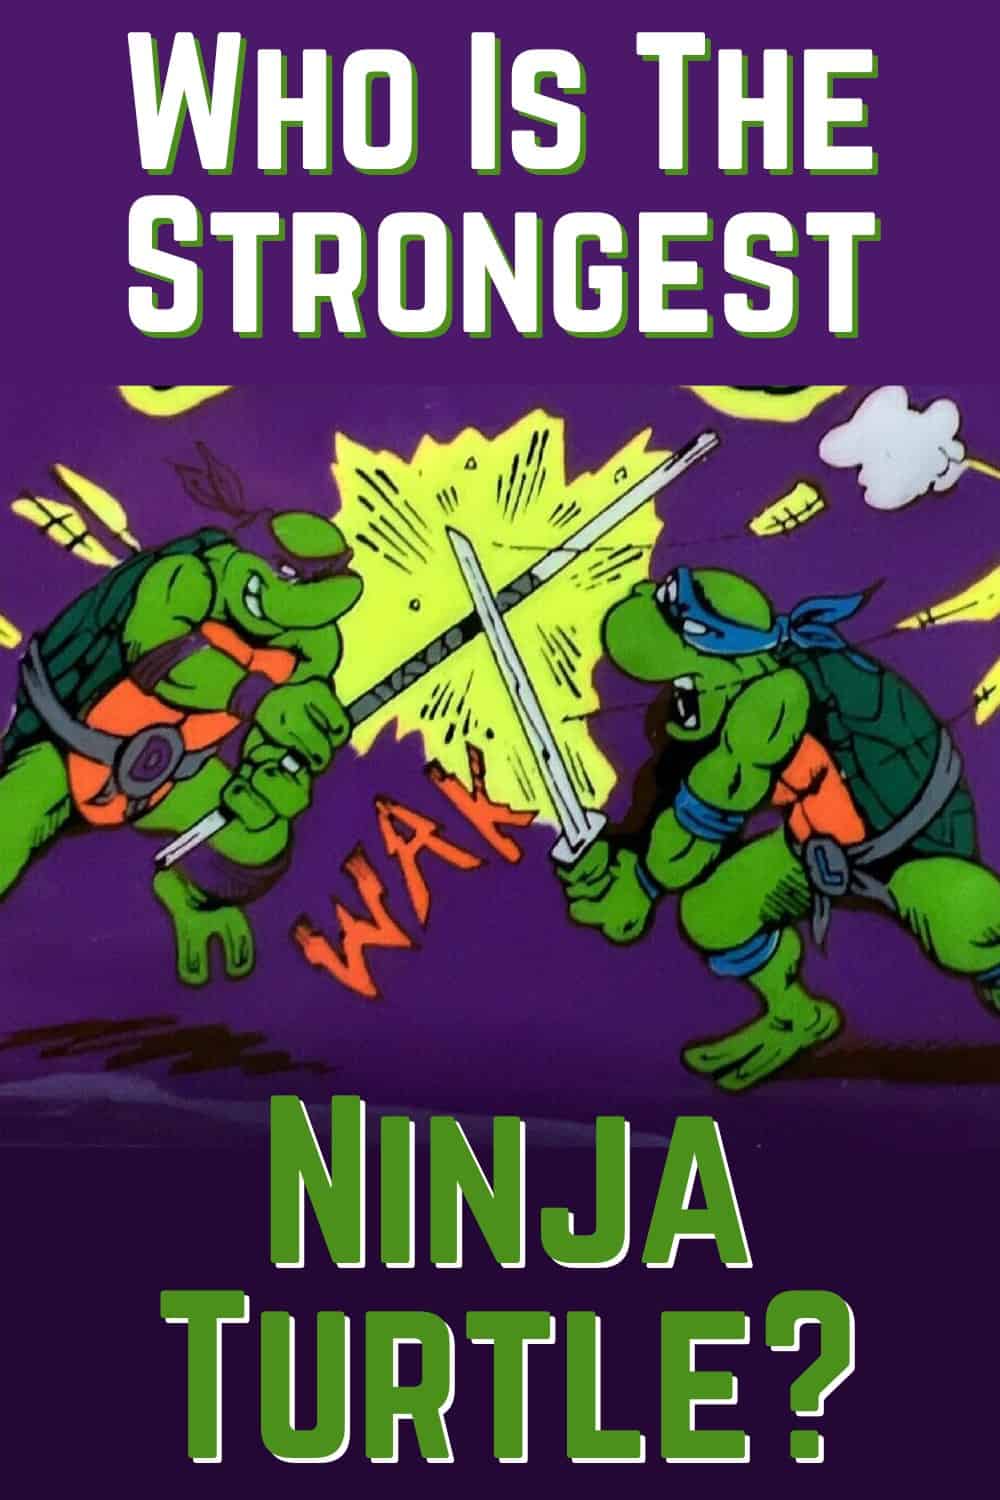 Raphael is the strongest Ninja Turtle